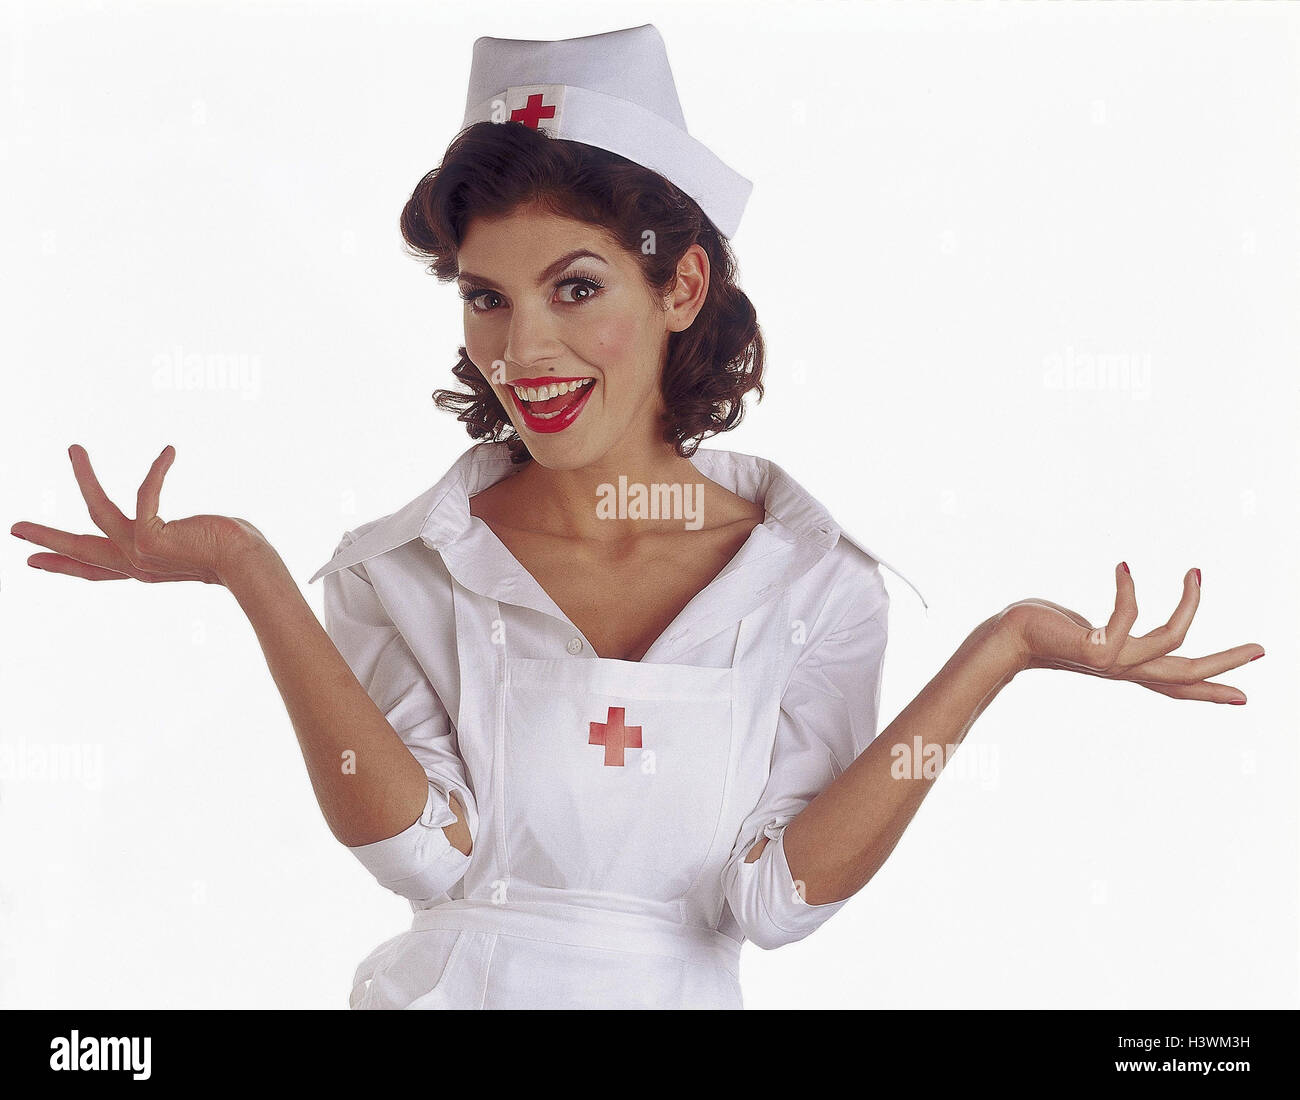 L'infermiera, il gesto, metà ritratto, donne, personale infermieristico, professione, personale ospedaliero, la medicina, l'innocenza, la Calmness, ridere, innocentemente, Foto Stock